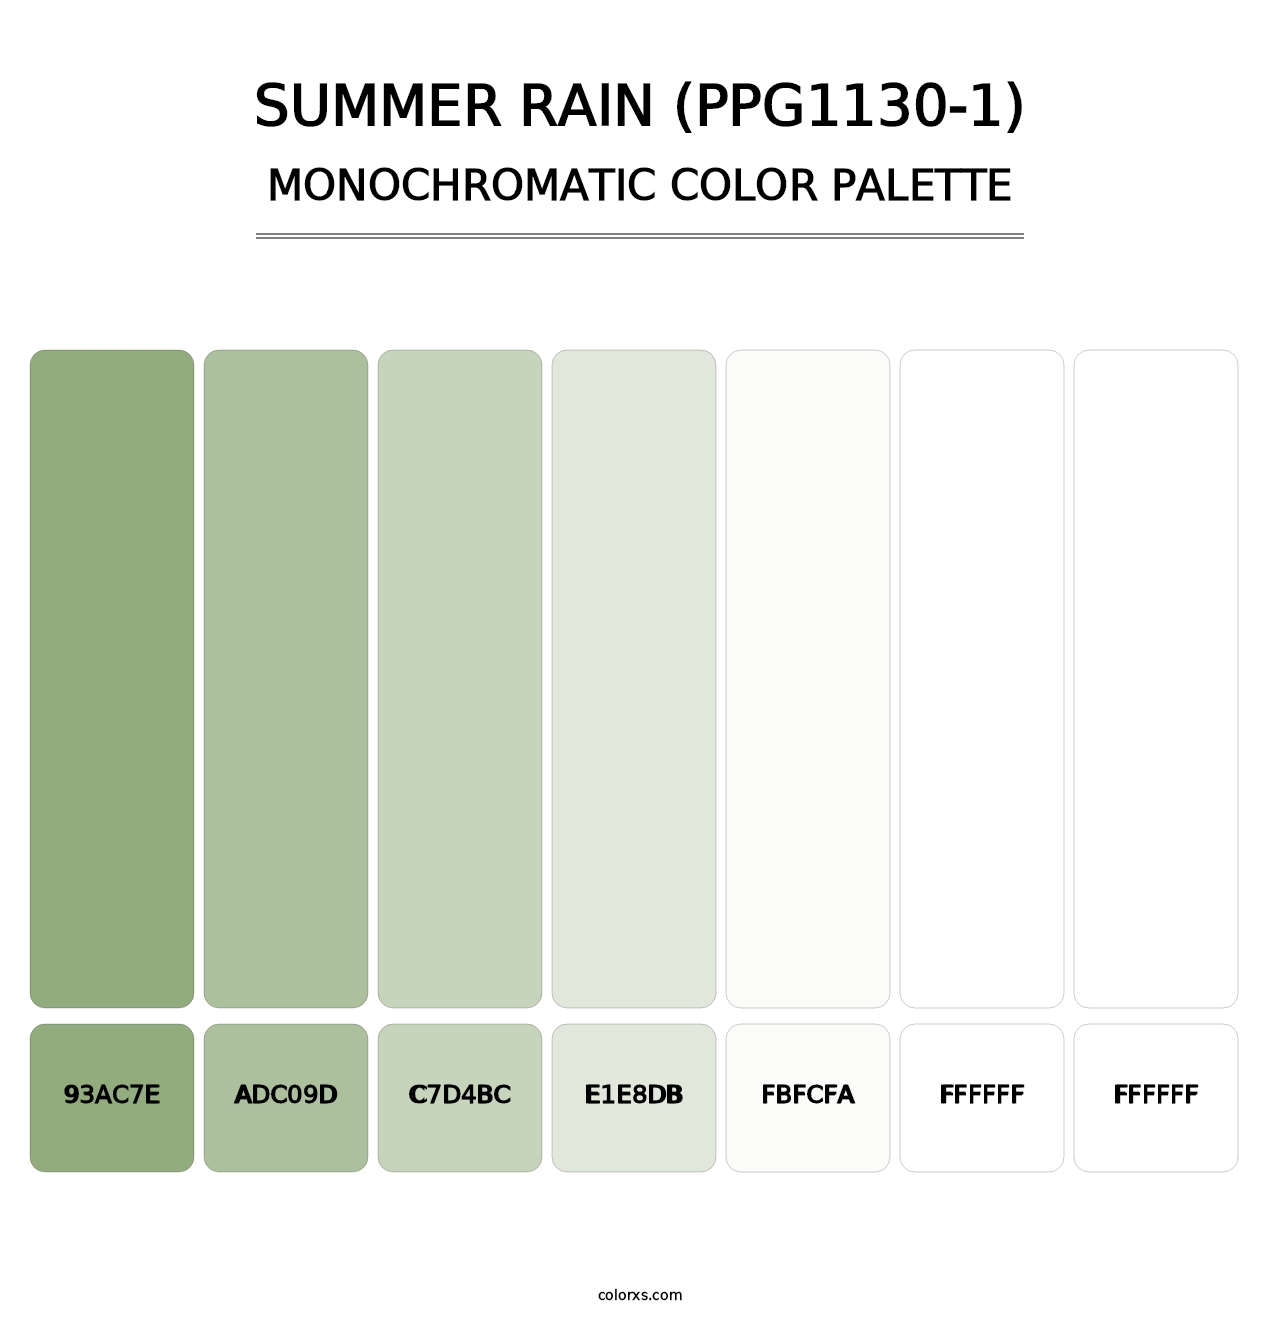 Summer Rain (PPG1130-1) - Monochromatic Color Palette